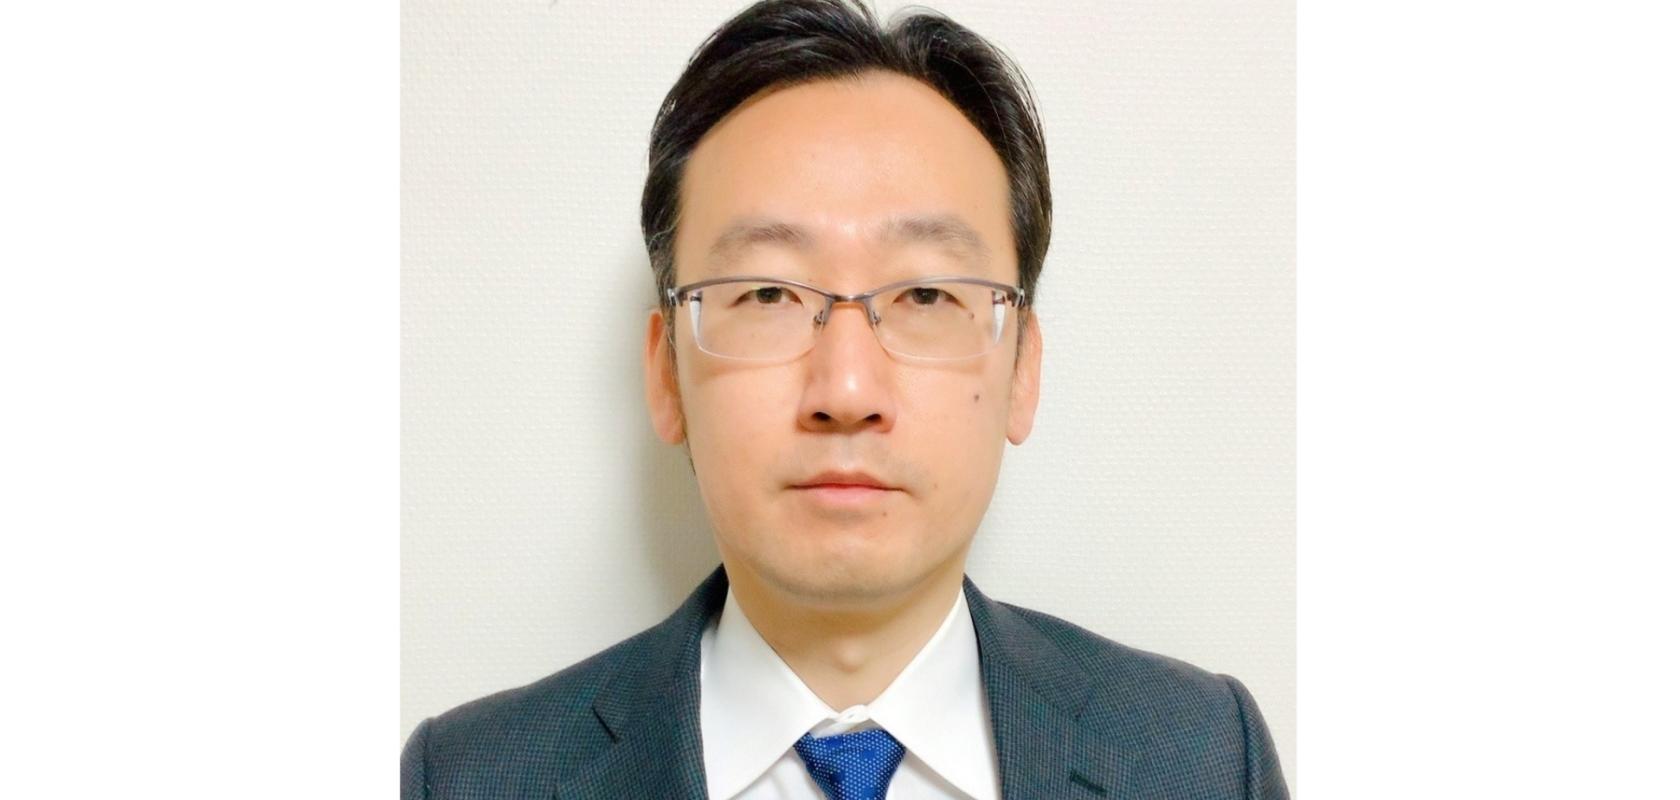 Masaru Koshihara, Assistant Manager at Anritsu